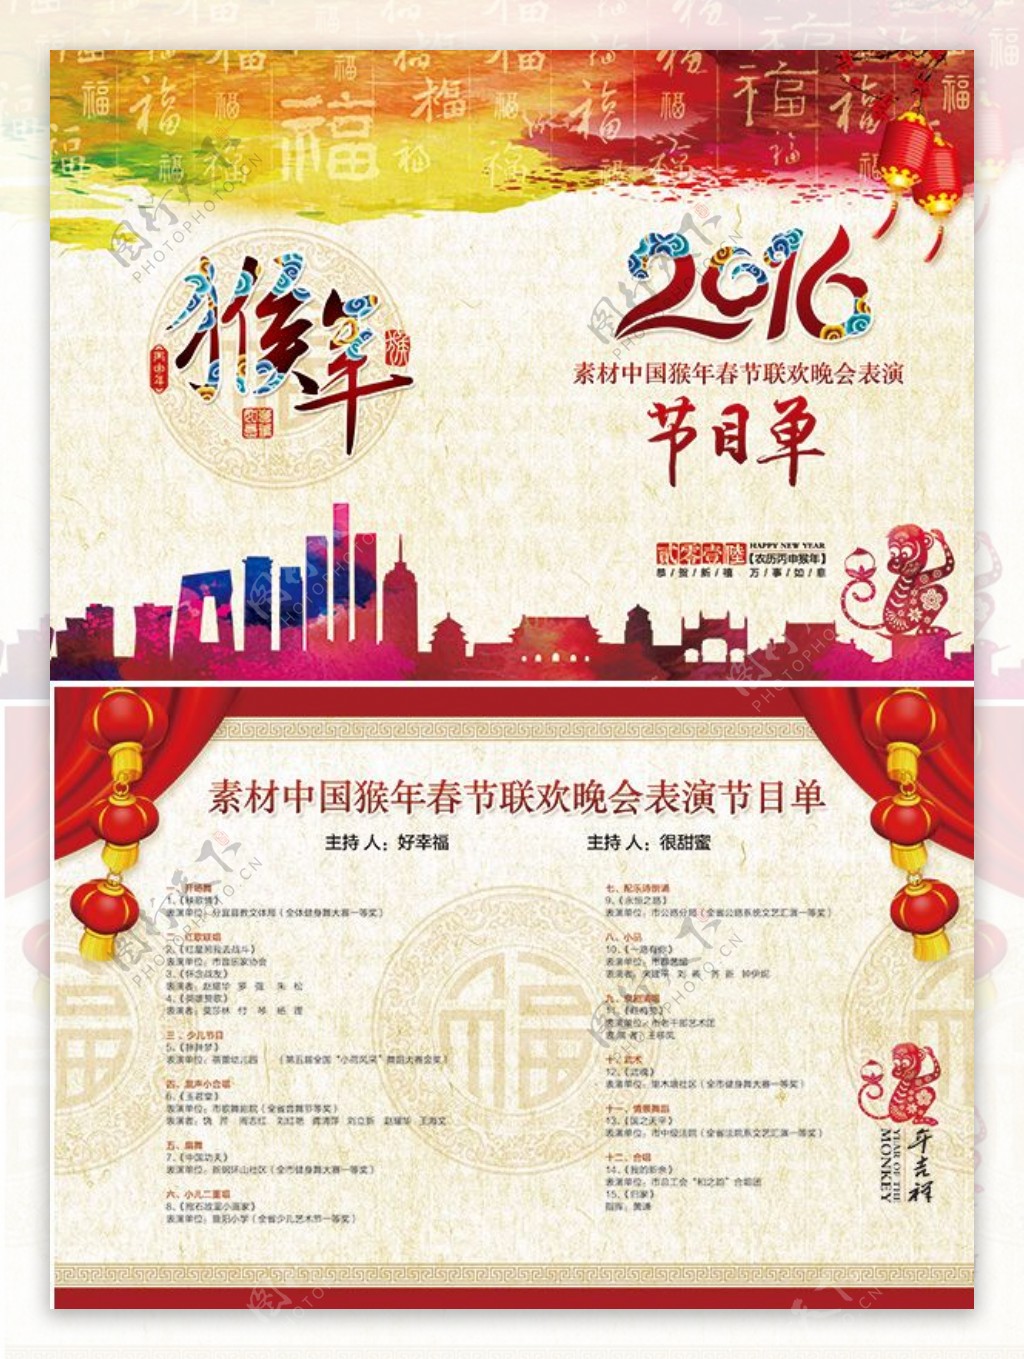 2016年猴年春节联欢晚会节目单设计